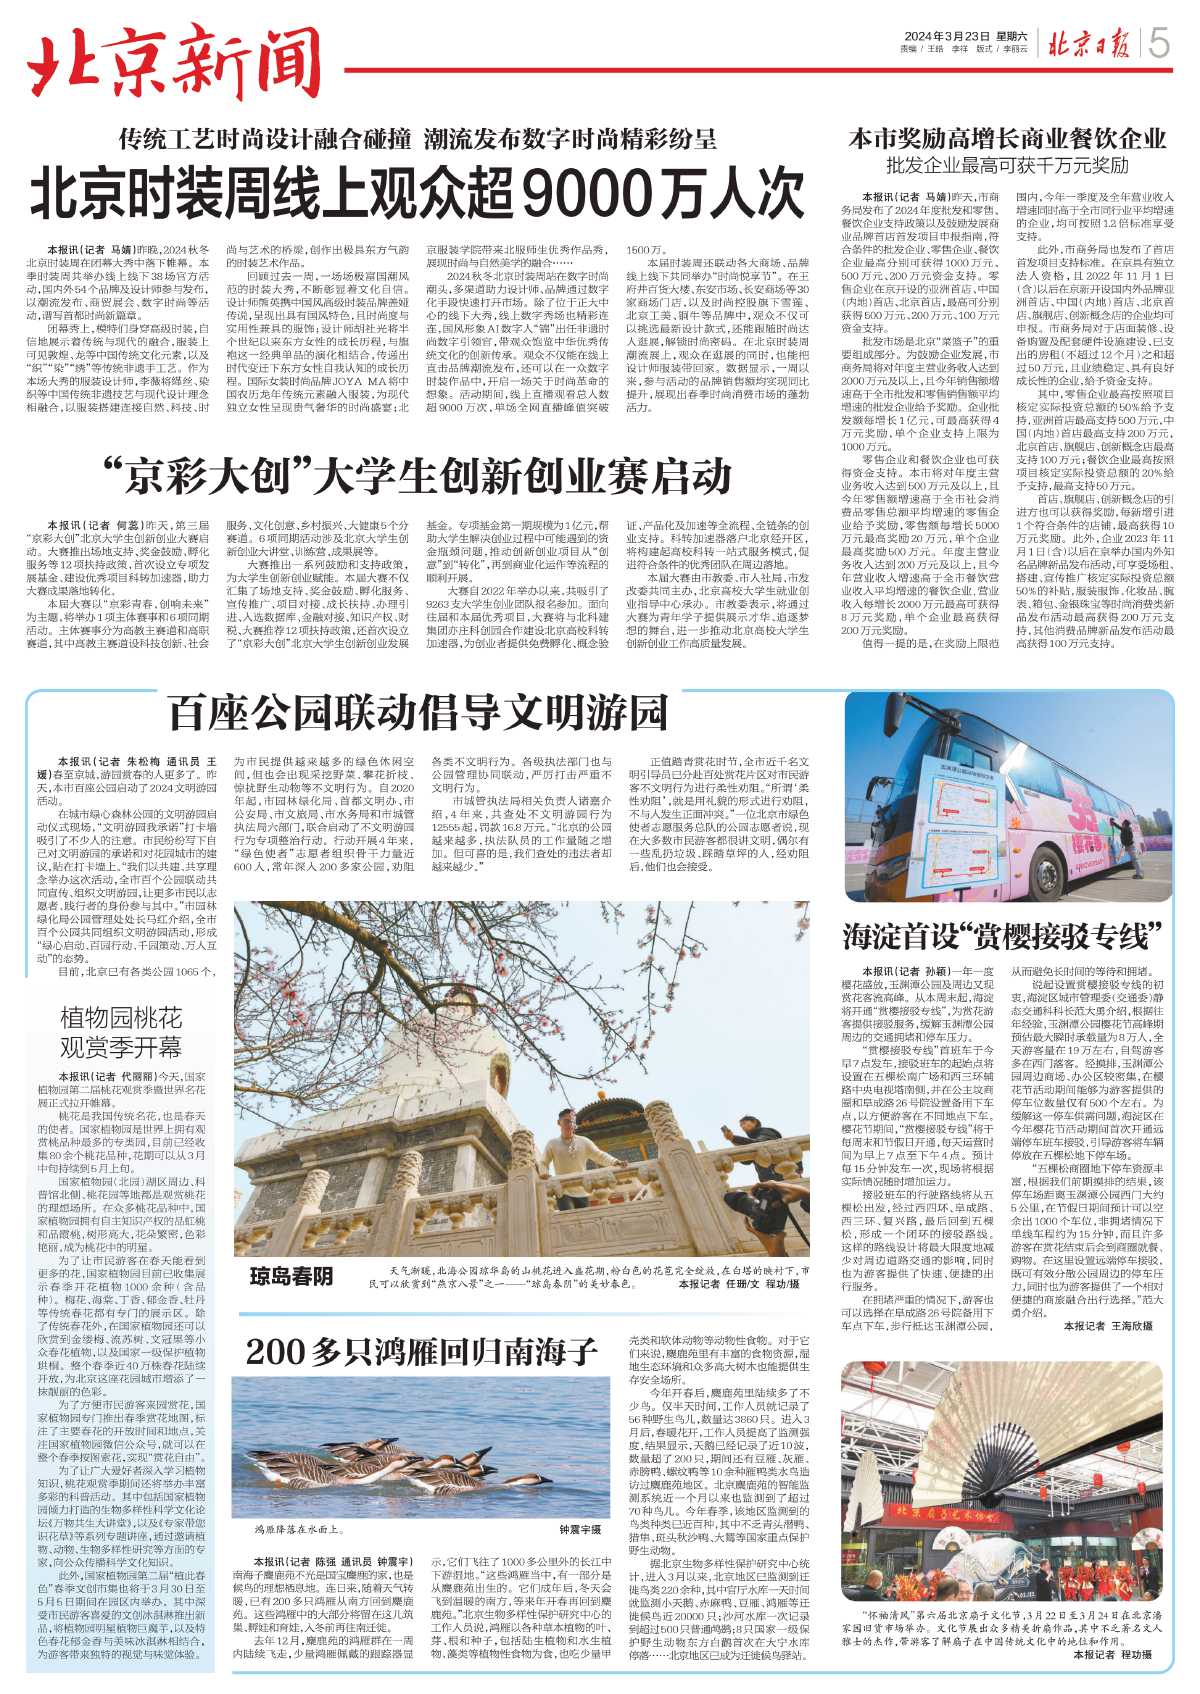 0323北京日报-百座公园联动倡导文明游园.jpg